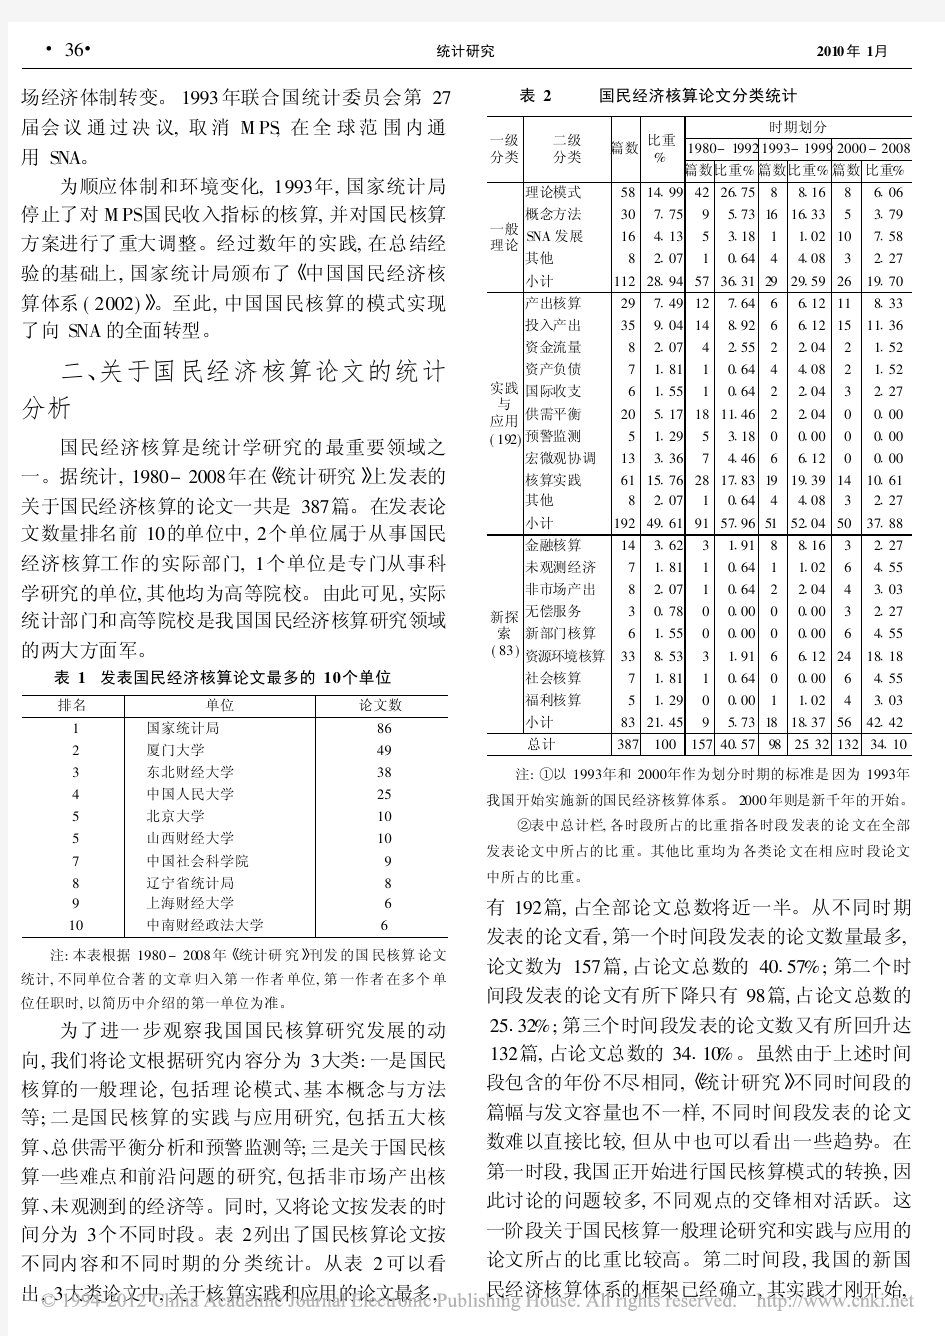 中国国民经济核算研究30年回顾